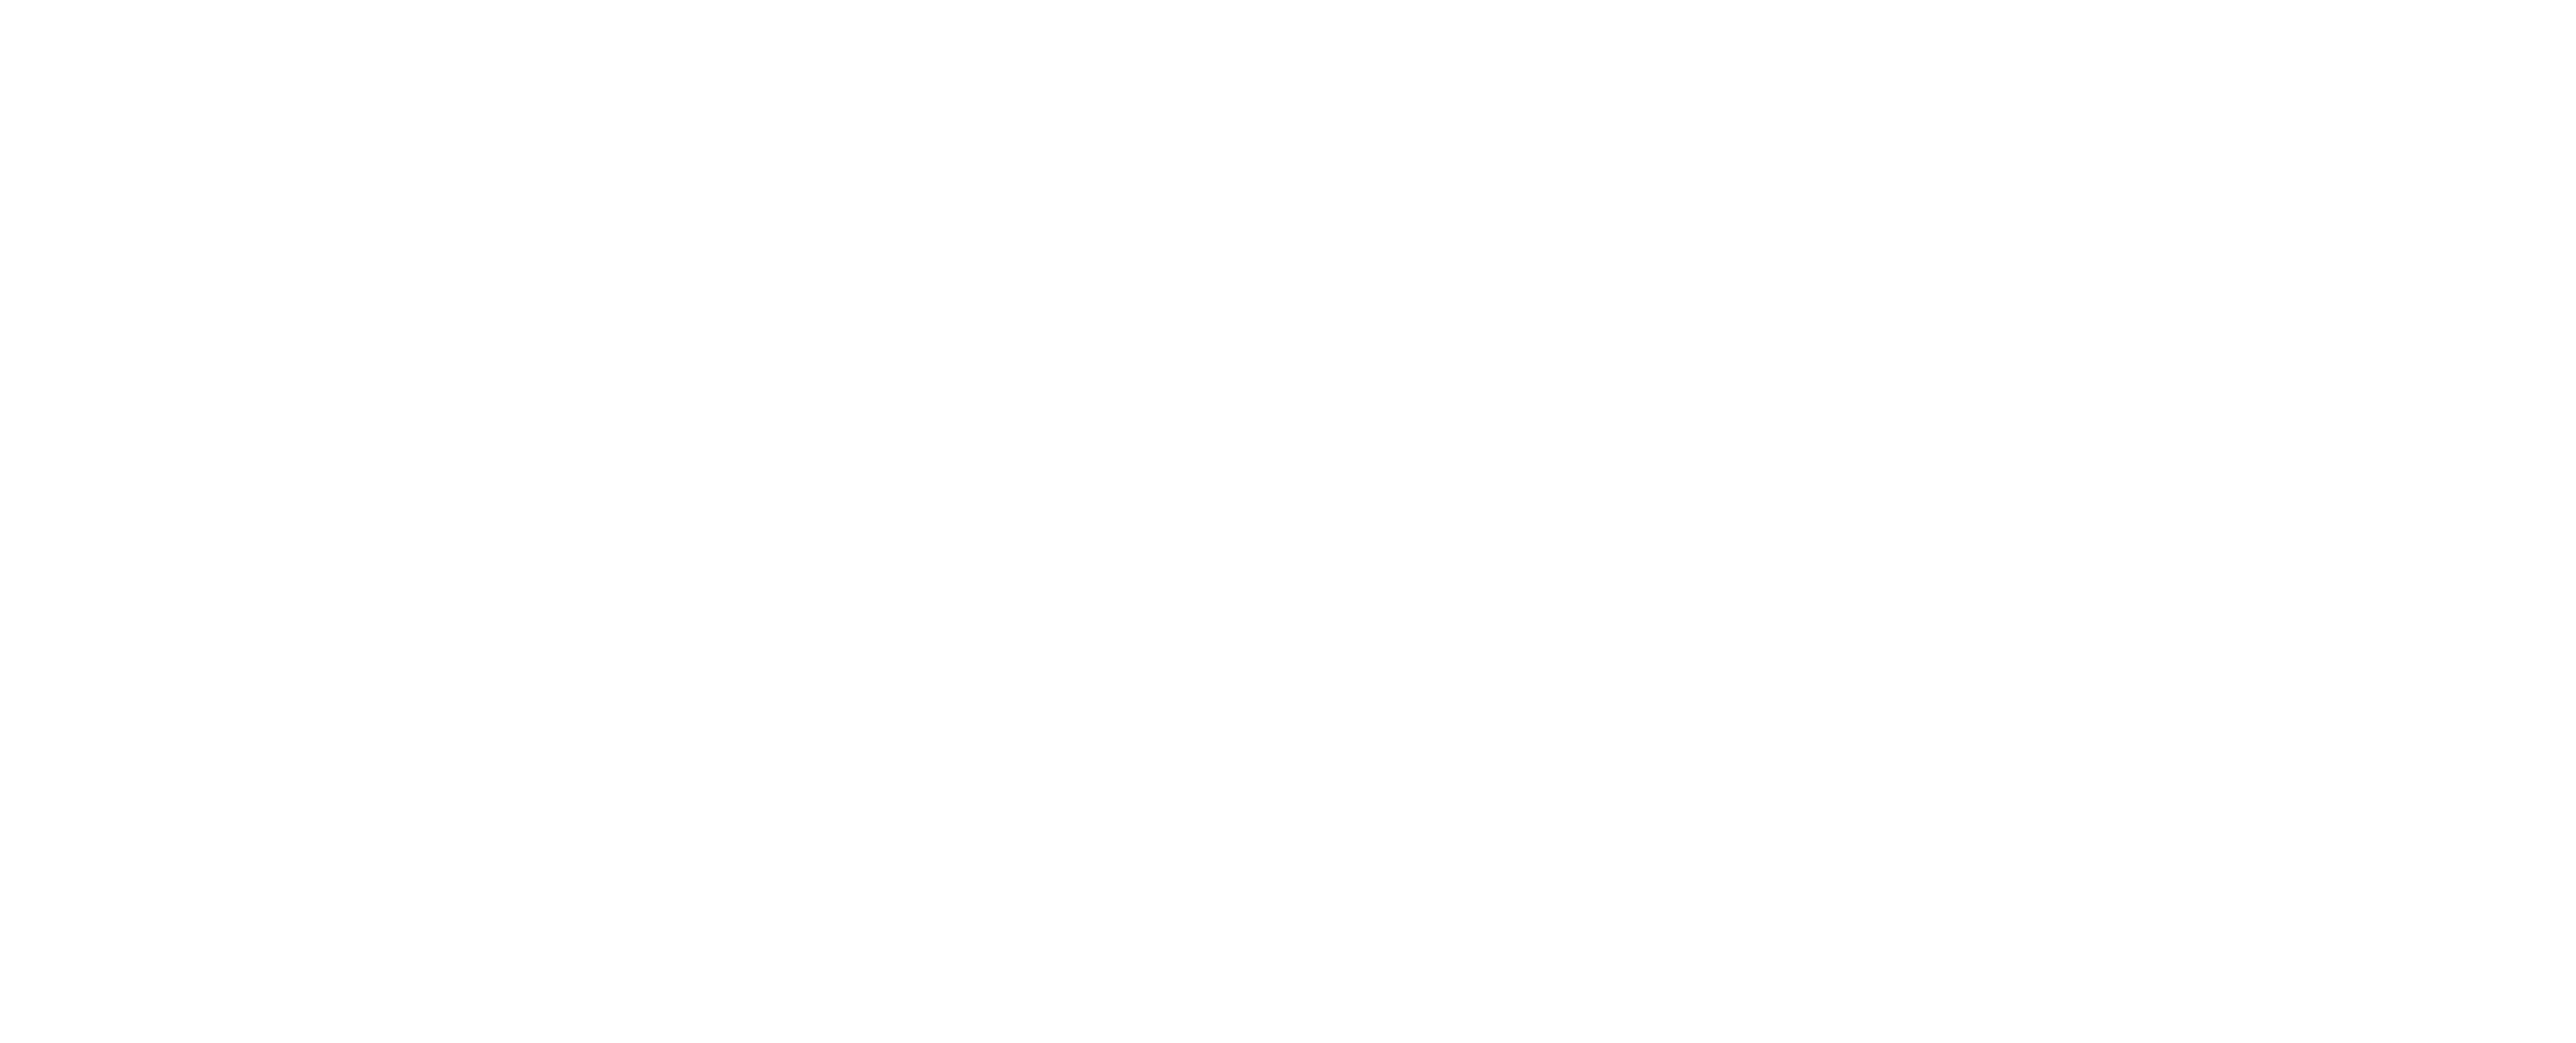 Logo government of Dubai